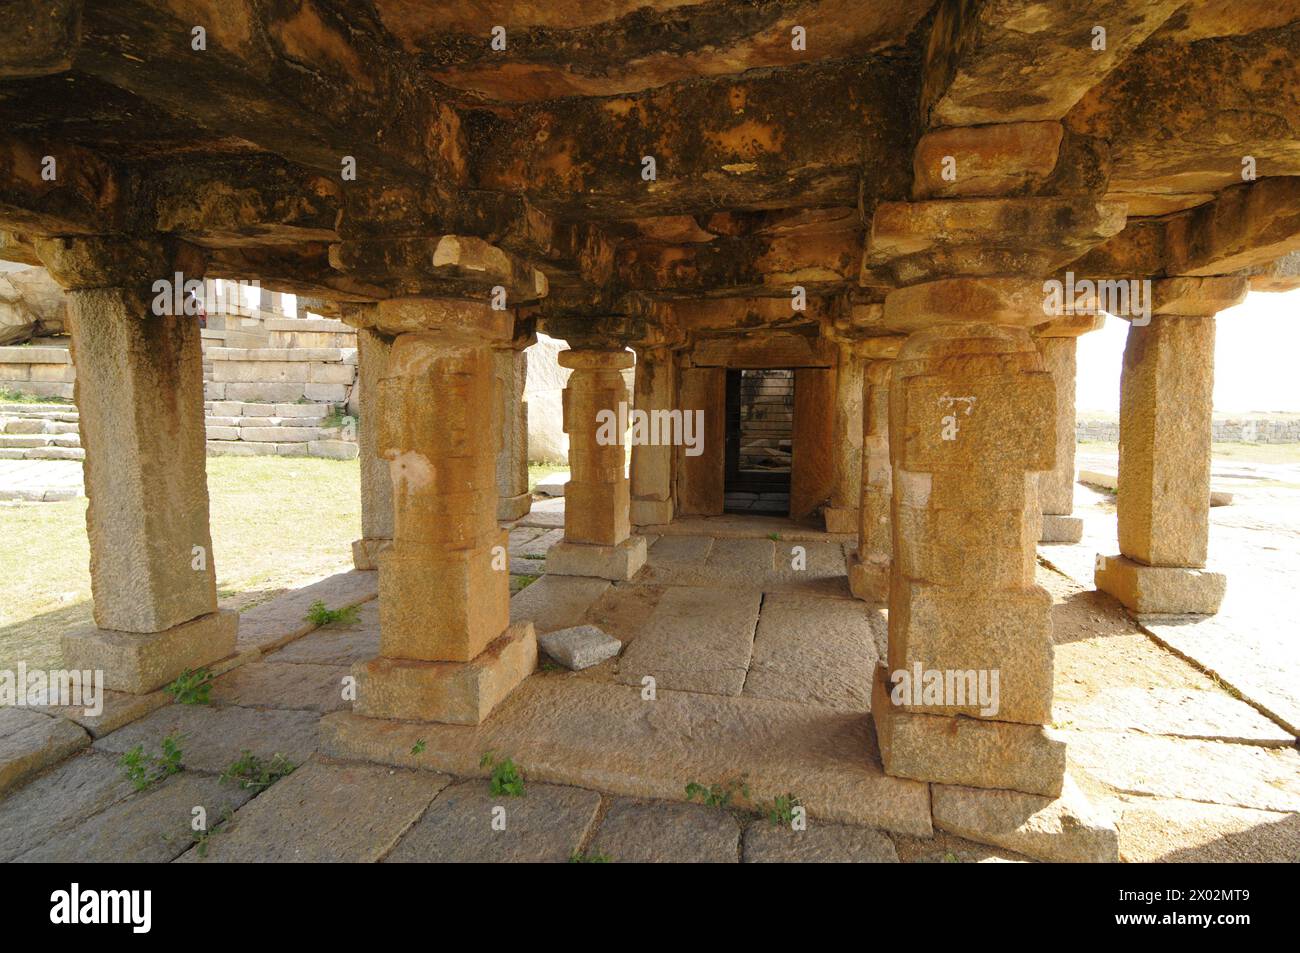 Mandapa dans un temple Vishnu Virukpaksha, Hampi, site du patrimoine mondial de l'UNESCO, Karnataka, Inde, Asie Banque D'Images